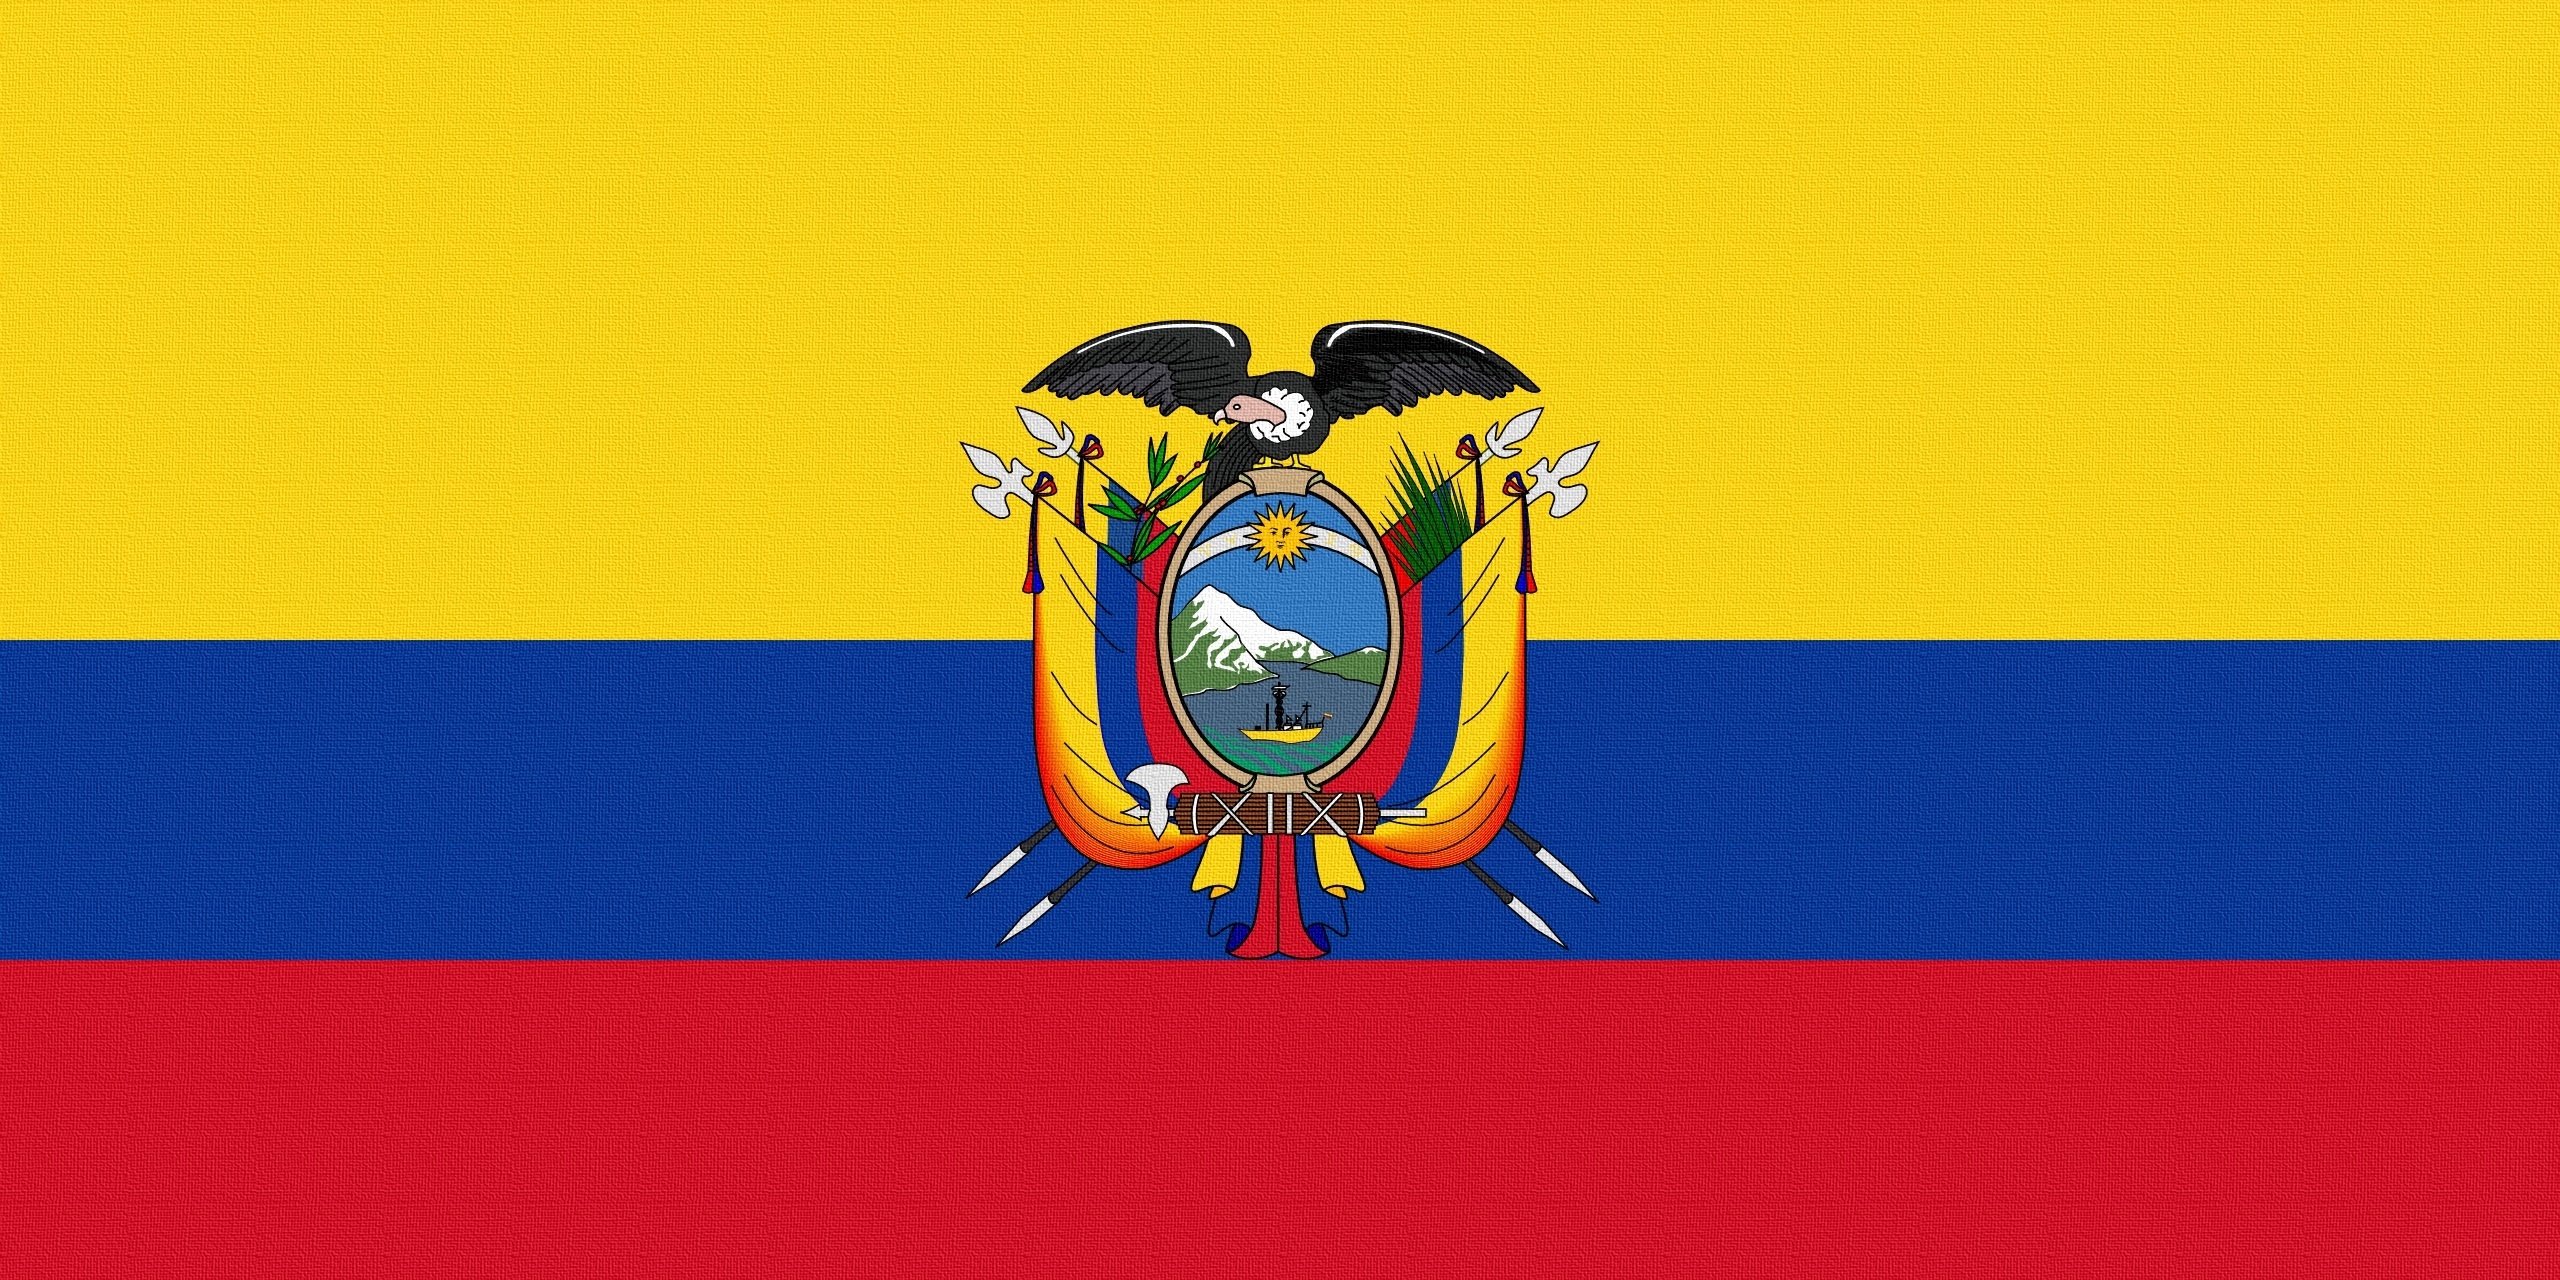 Скачать обои Эквадор на телефон бесплатно